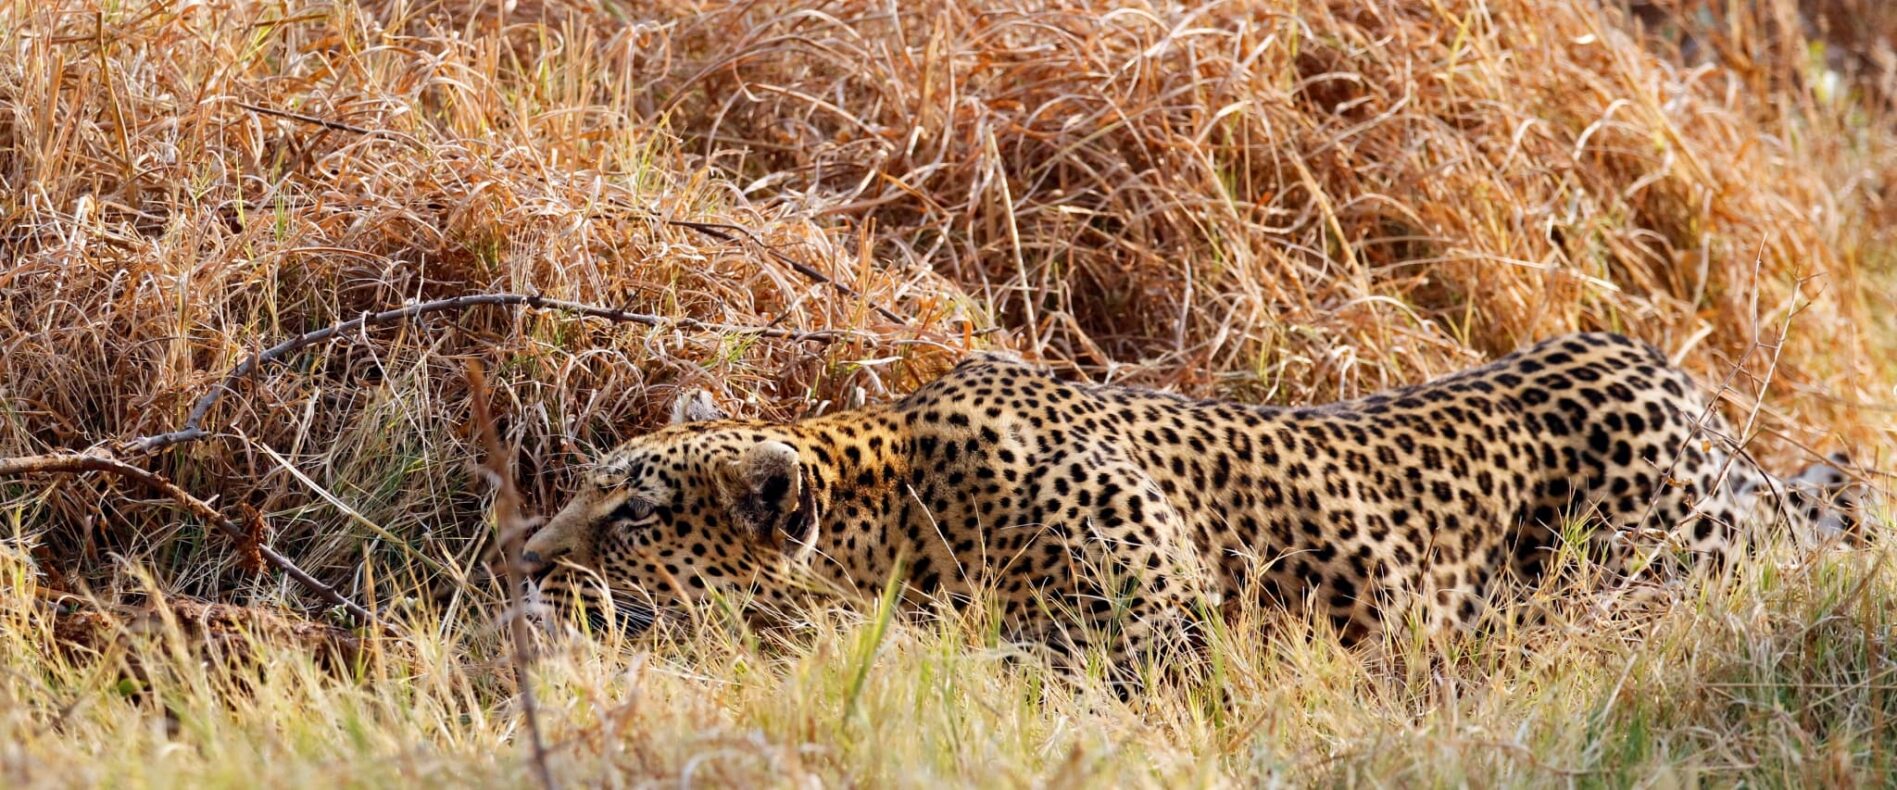 prowling leopard, Botswana